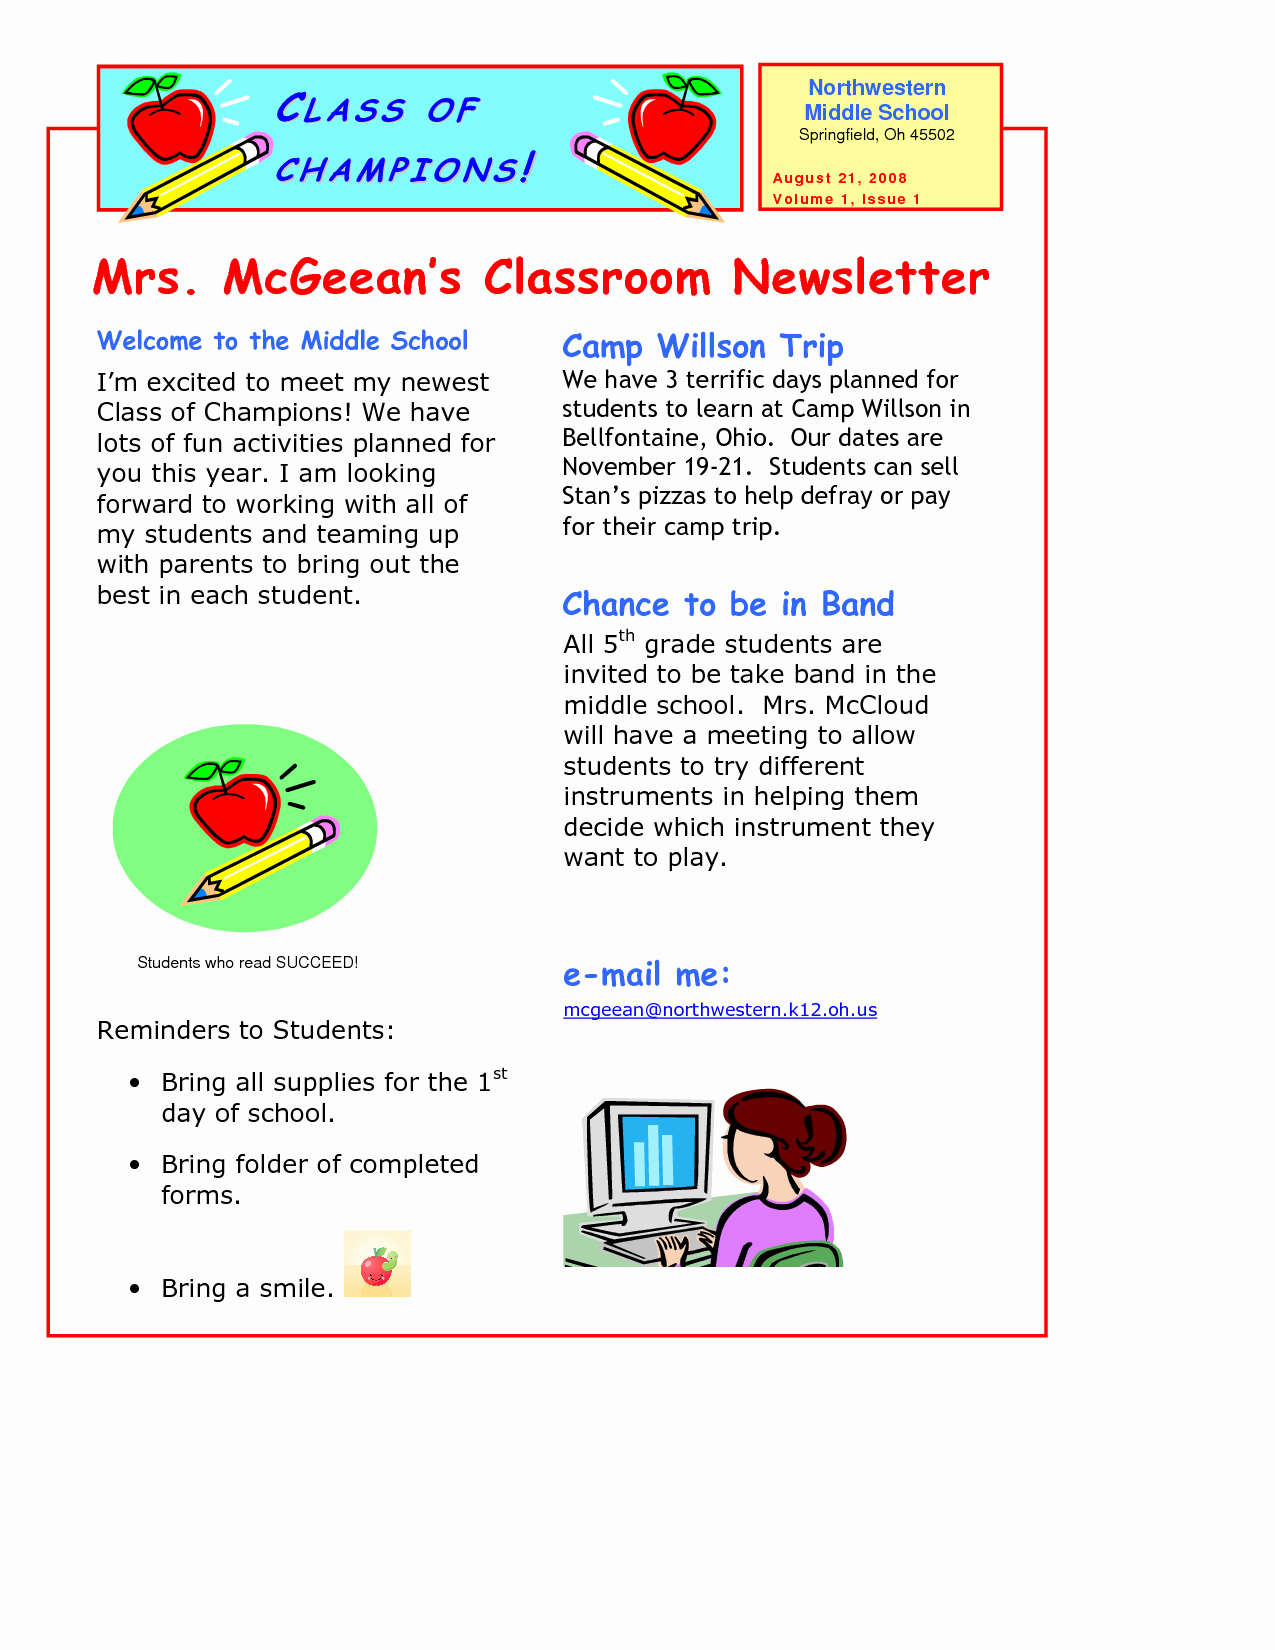 Elementary School Newsletter Template Inspirational Classroom Newsletter Template